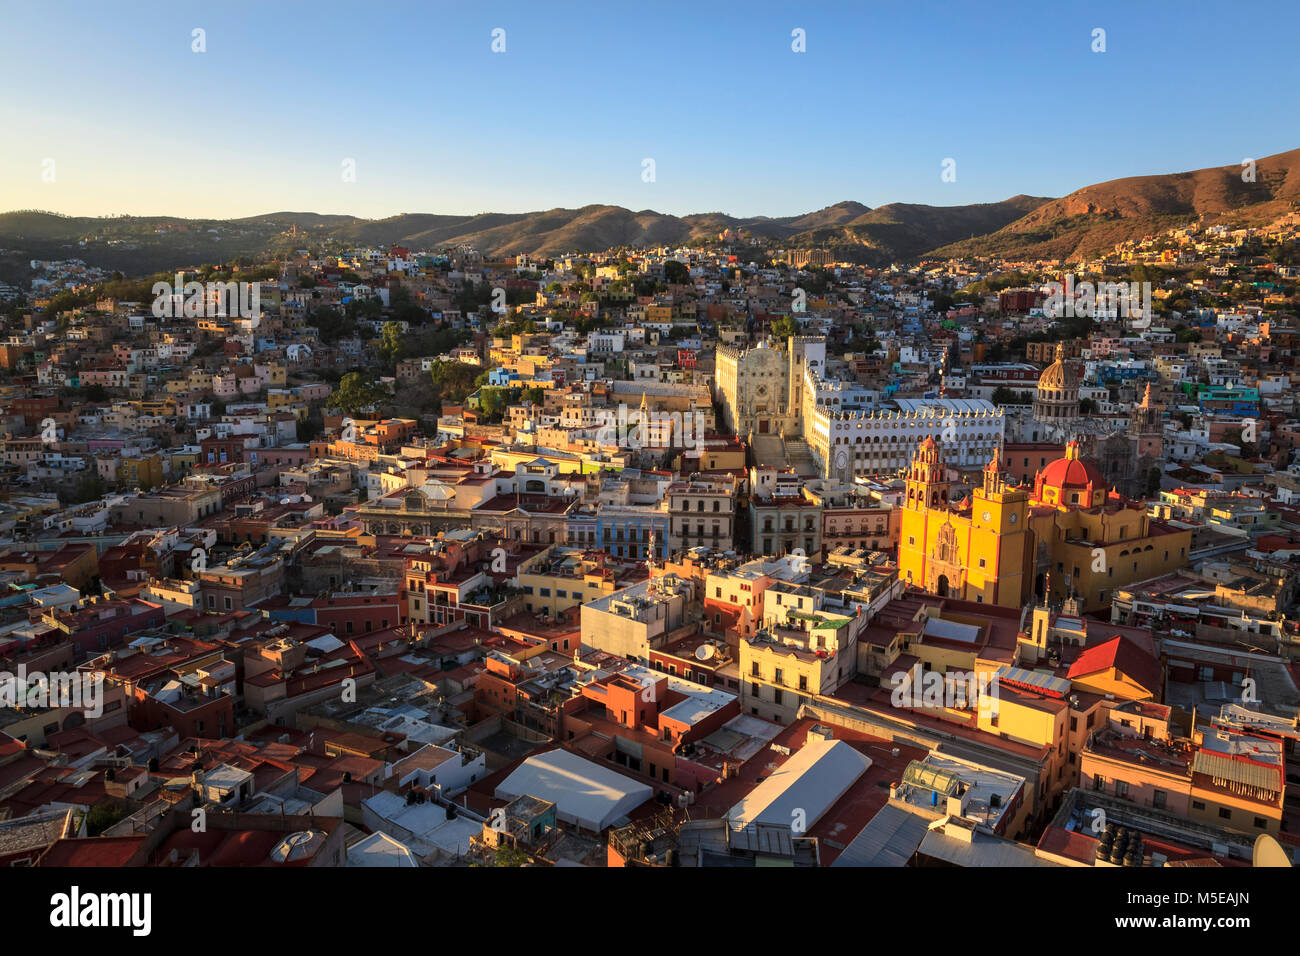 Vue horizontale de la ville colorée de Guanajuato au Mexique central, Site du patrimoine mondial de l'Unesco depuis 1988. Banque D'Images